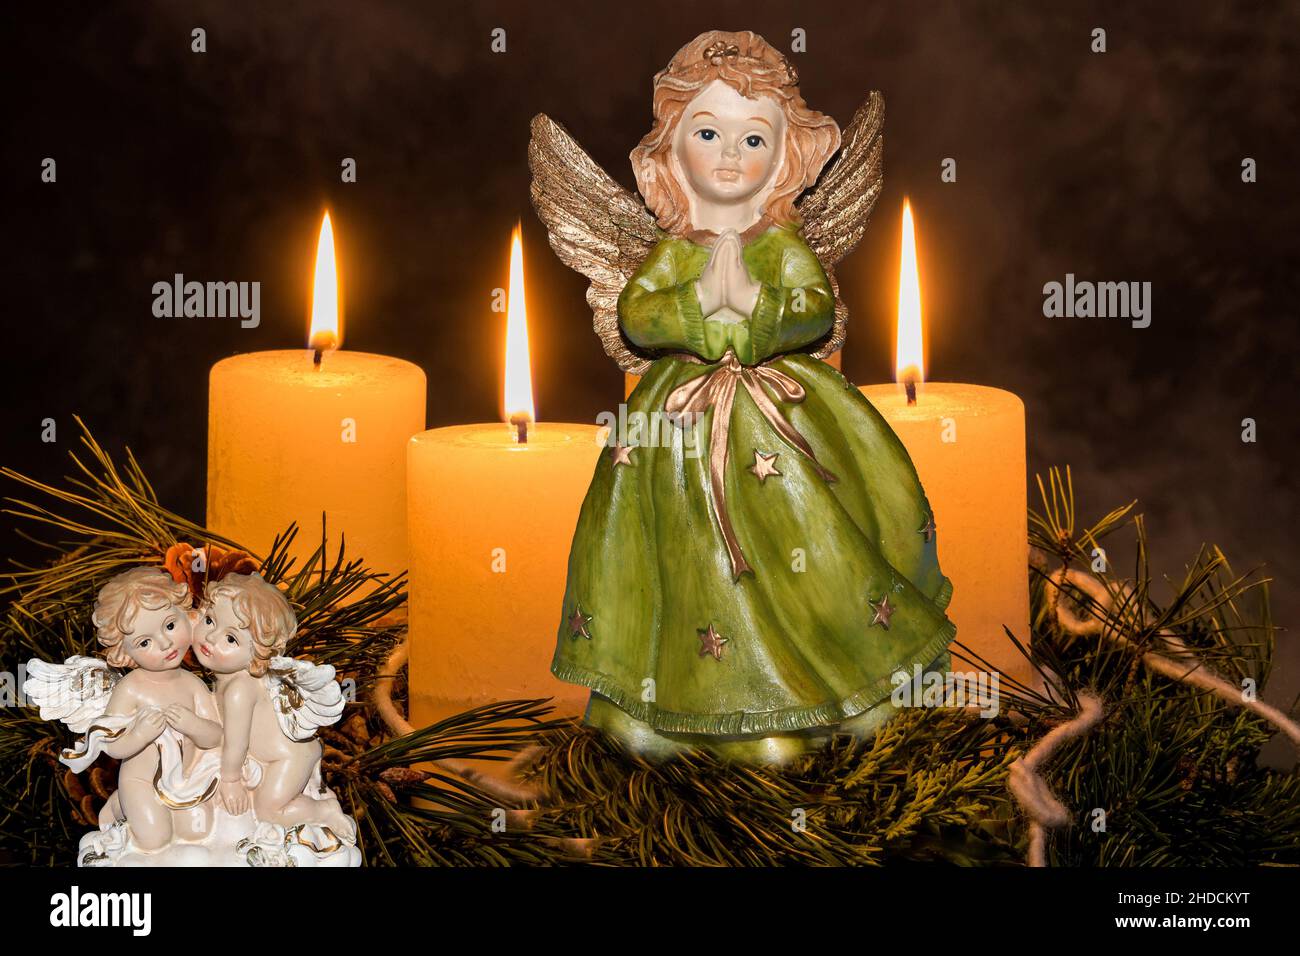 Ein Adventskranz zu Weihnachten sorgt für romatinsche Stimmung in der stillen Advent Zeit, 3. Advent, drei brennende Kerzen, Engel, weihnachtsengel, Stock Photo